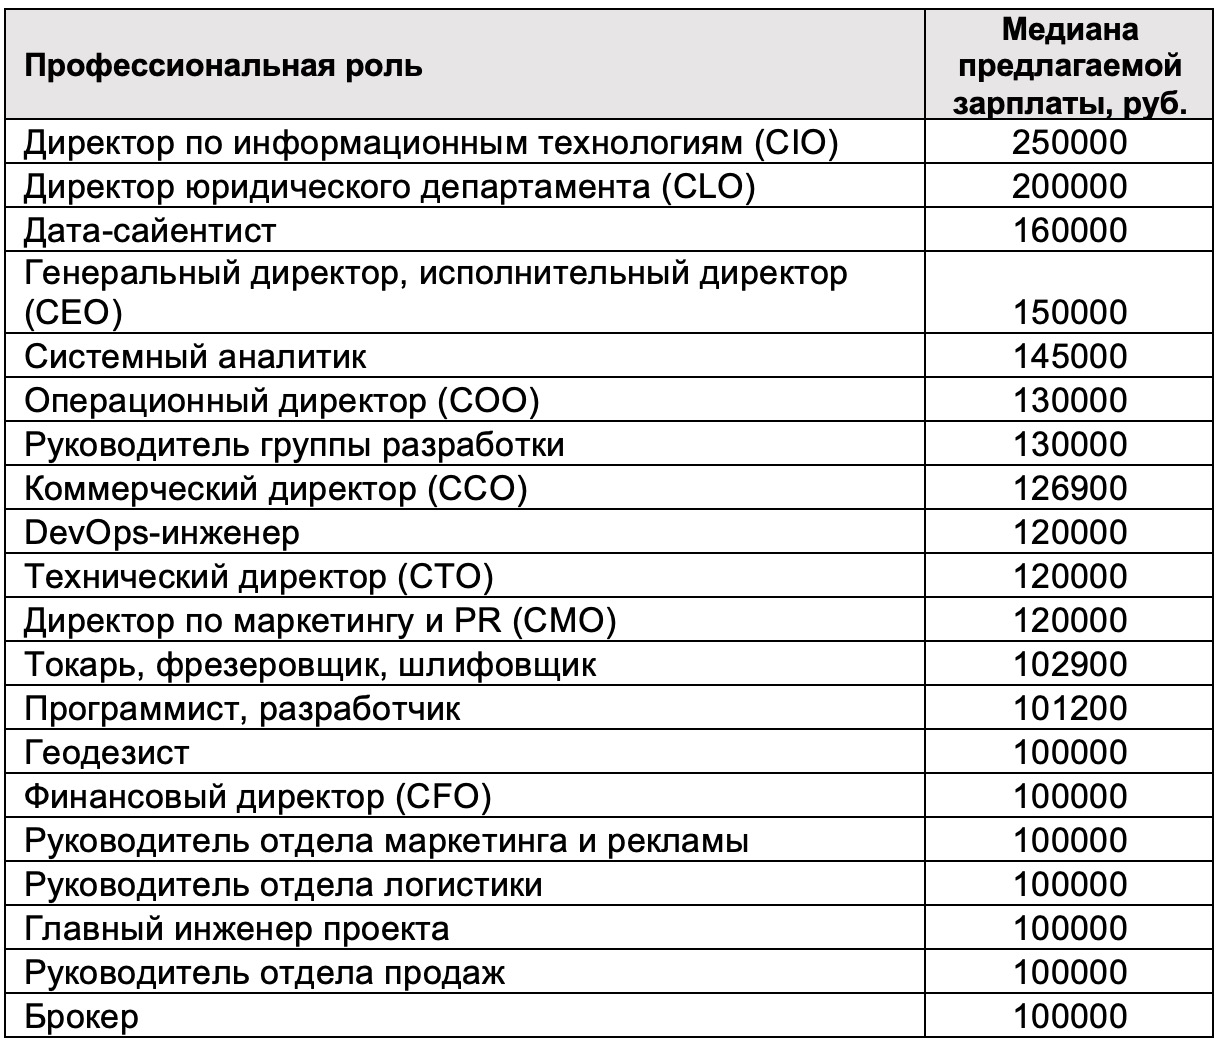 Какие самые высокие зарплаты предлагали в Воронежской области в 2023 году